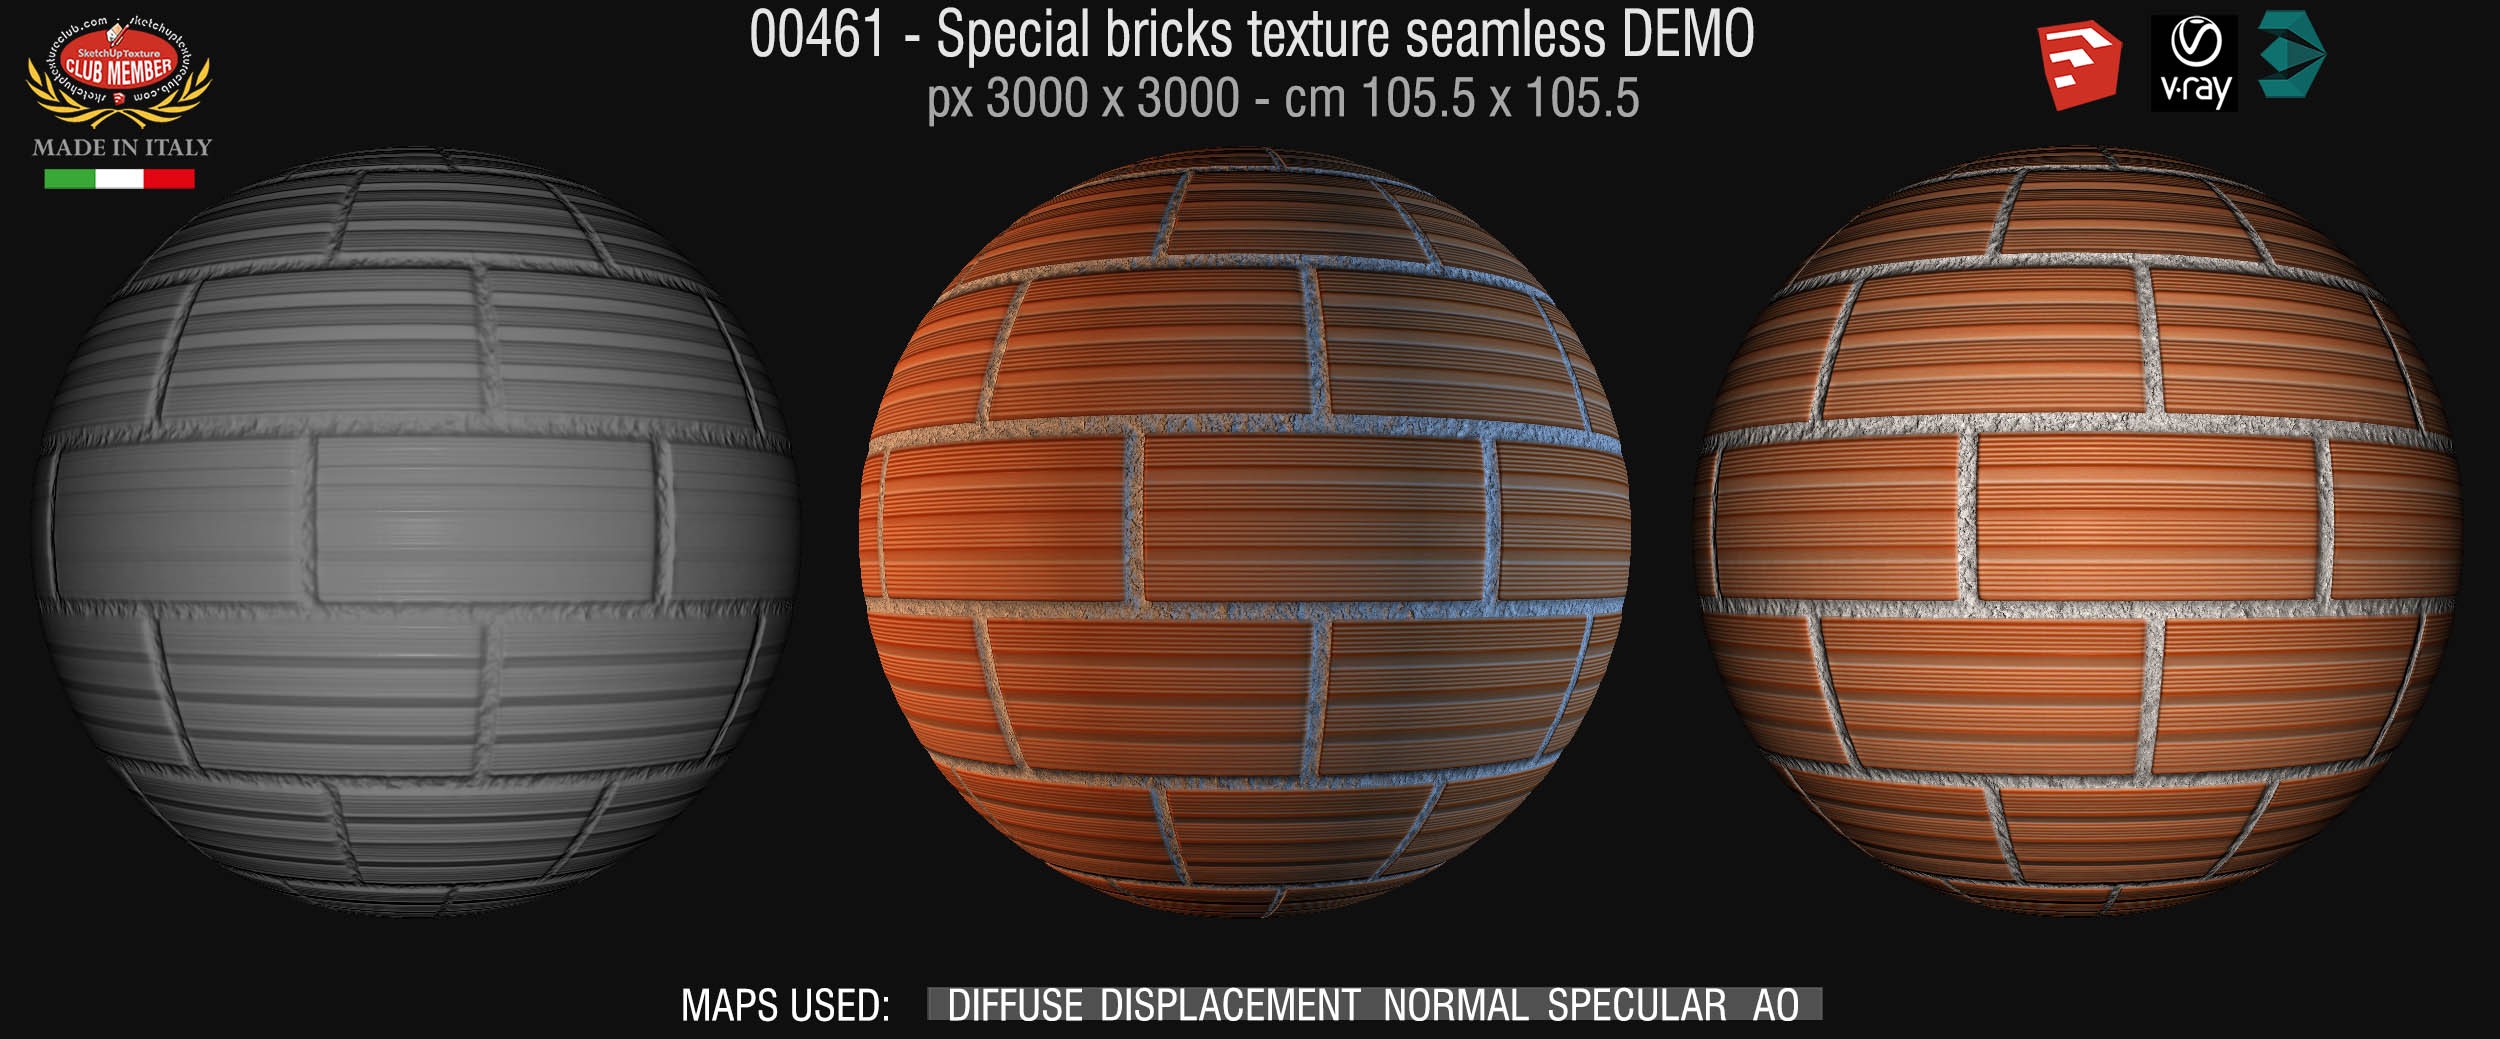 00461 Special bricks texture seamless + maps DEMO